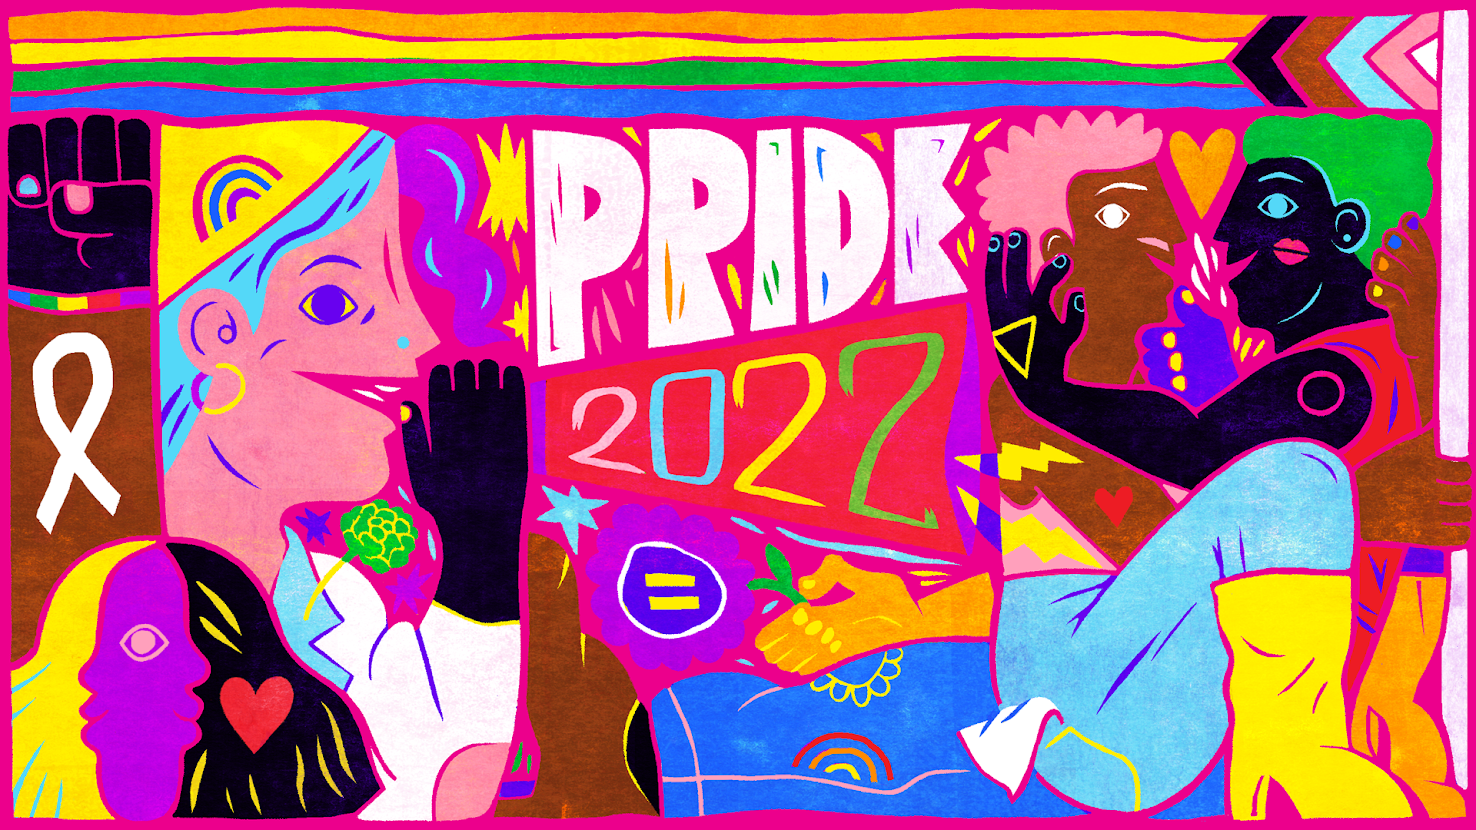 buzzfeed pride 2022 artwork